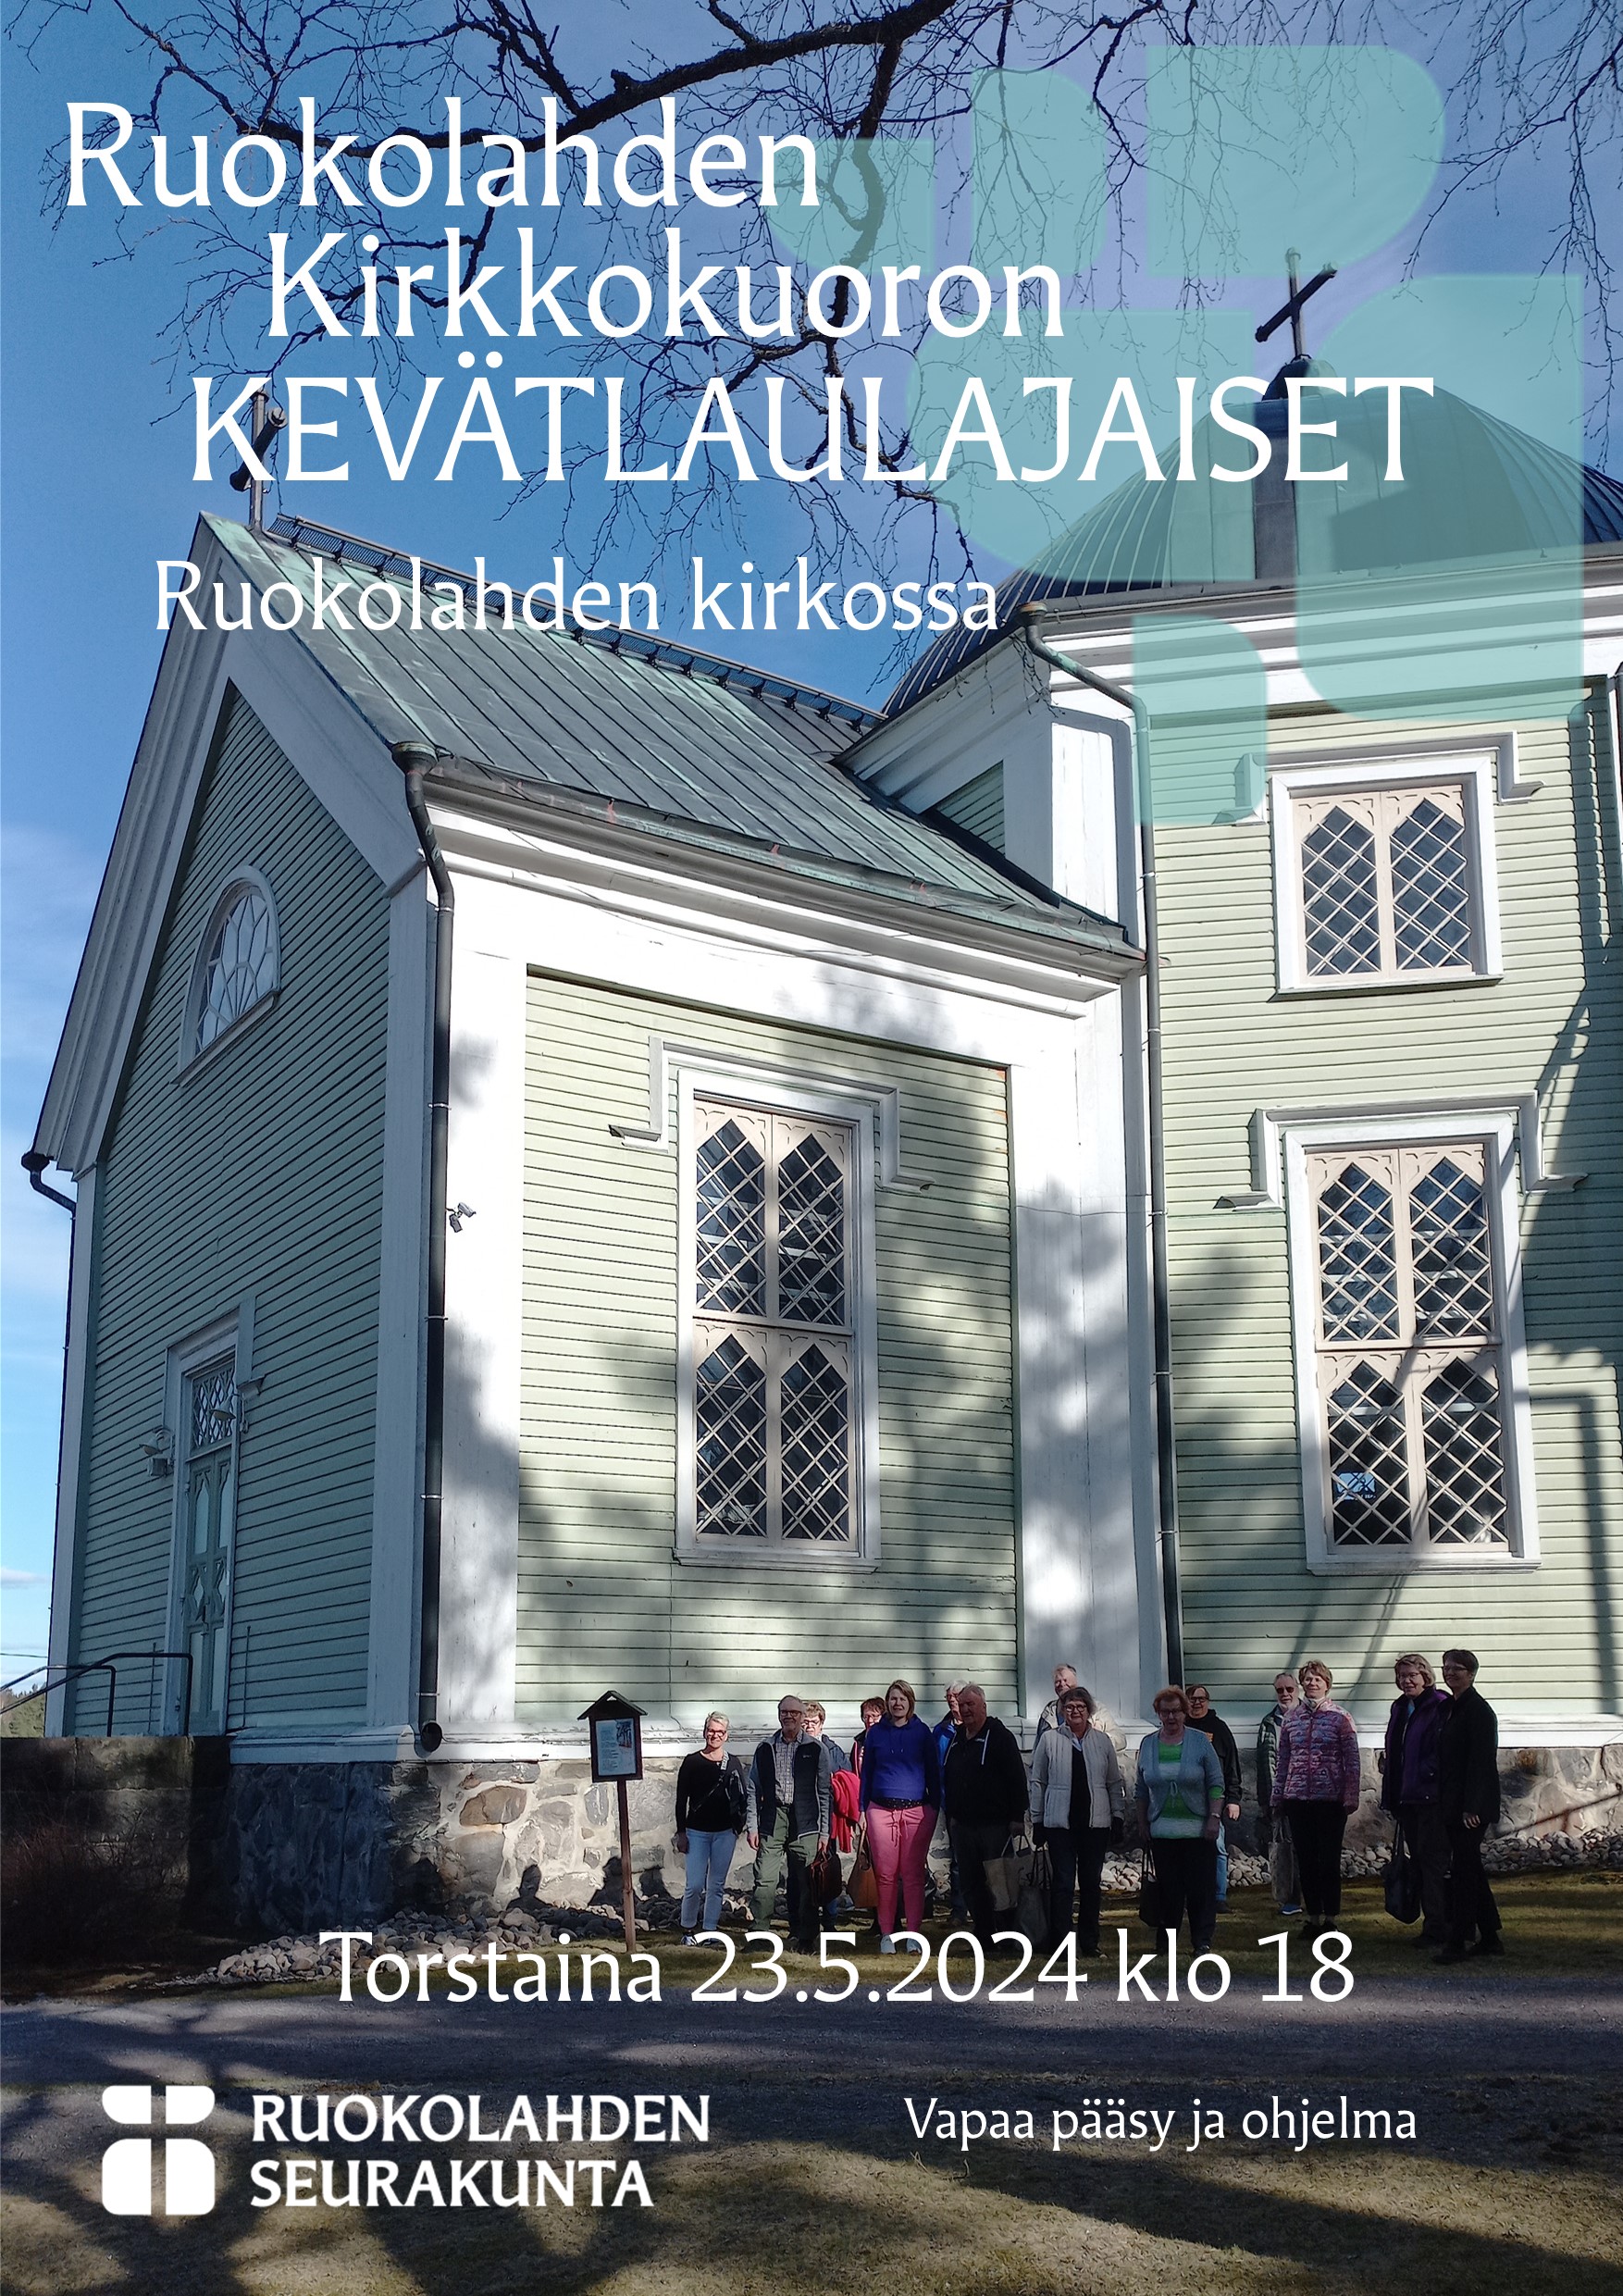 Kuvassa taustalla Ruokolahden kirkko, jonka juurella ihmisiä. Valkoisella tekstillä mainoksen tekstit.